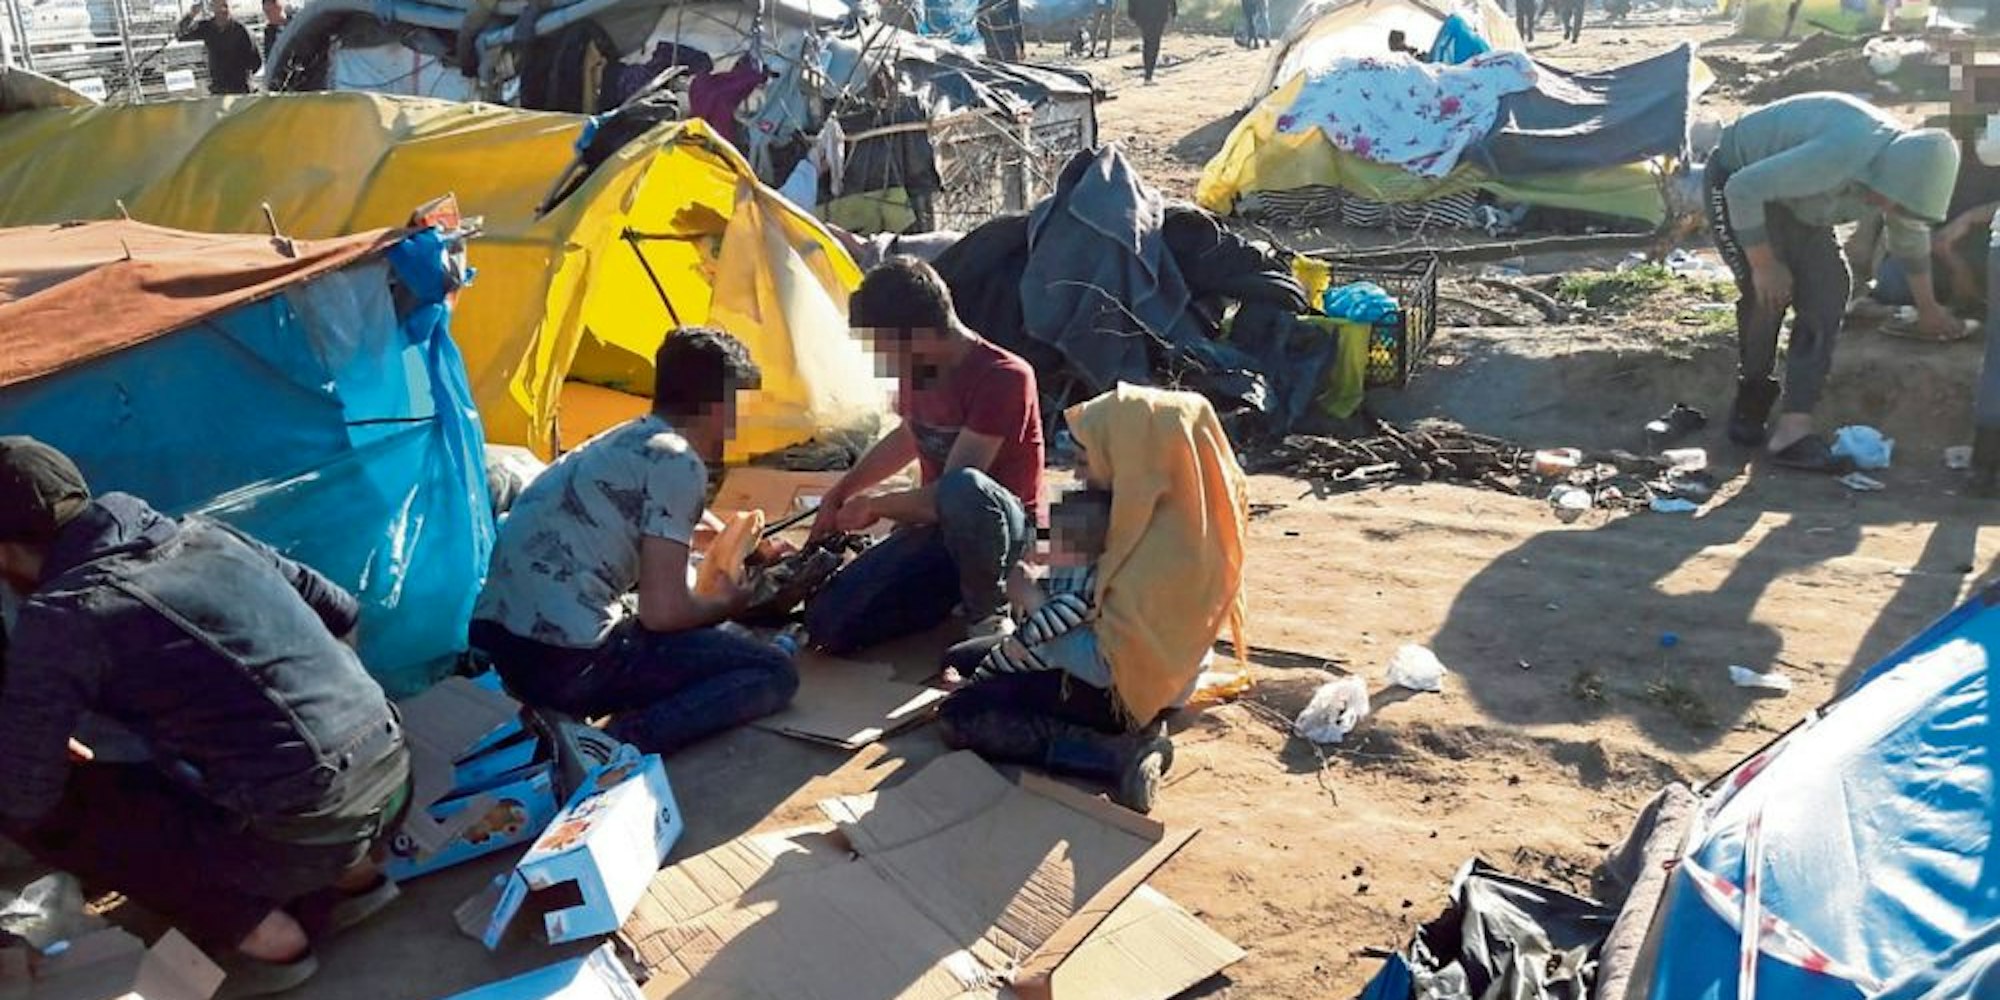 Die Zustände im Camp sind unmenschlich, deshalb halfen die Studenten den Menschen mit dem Nötigsten.